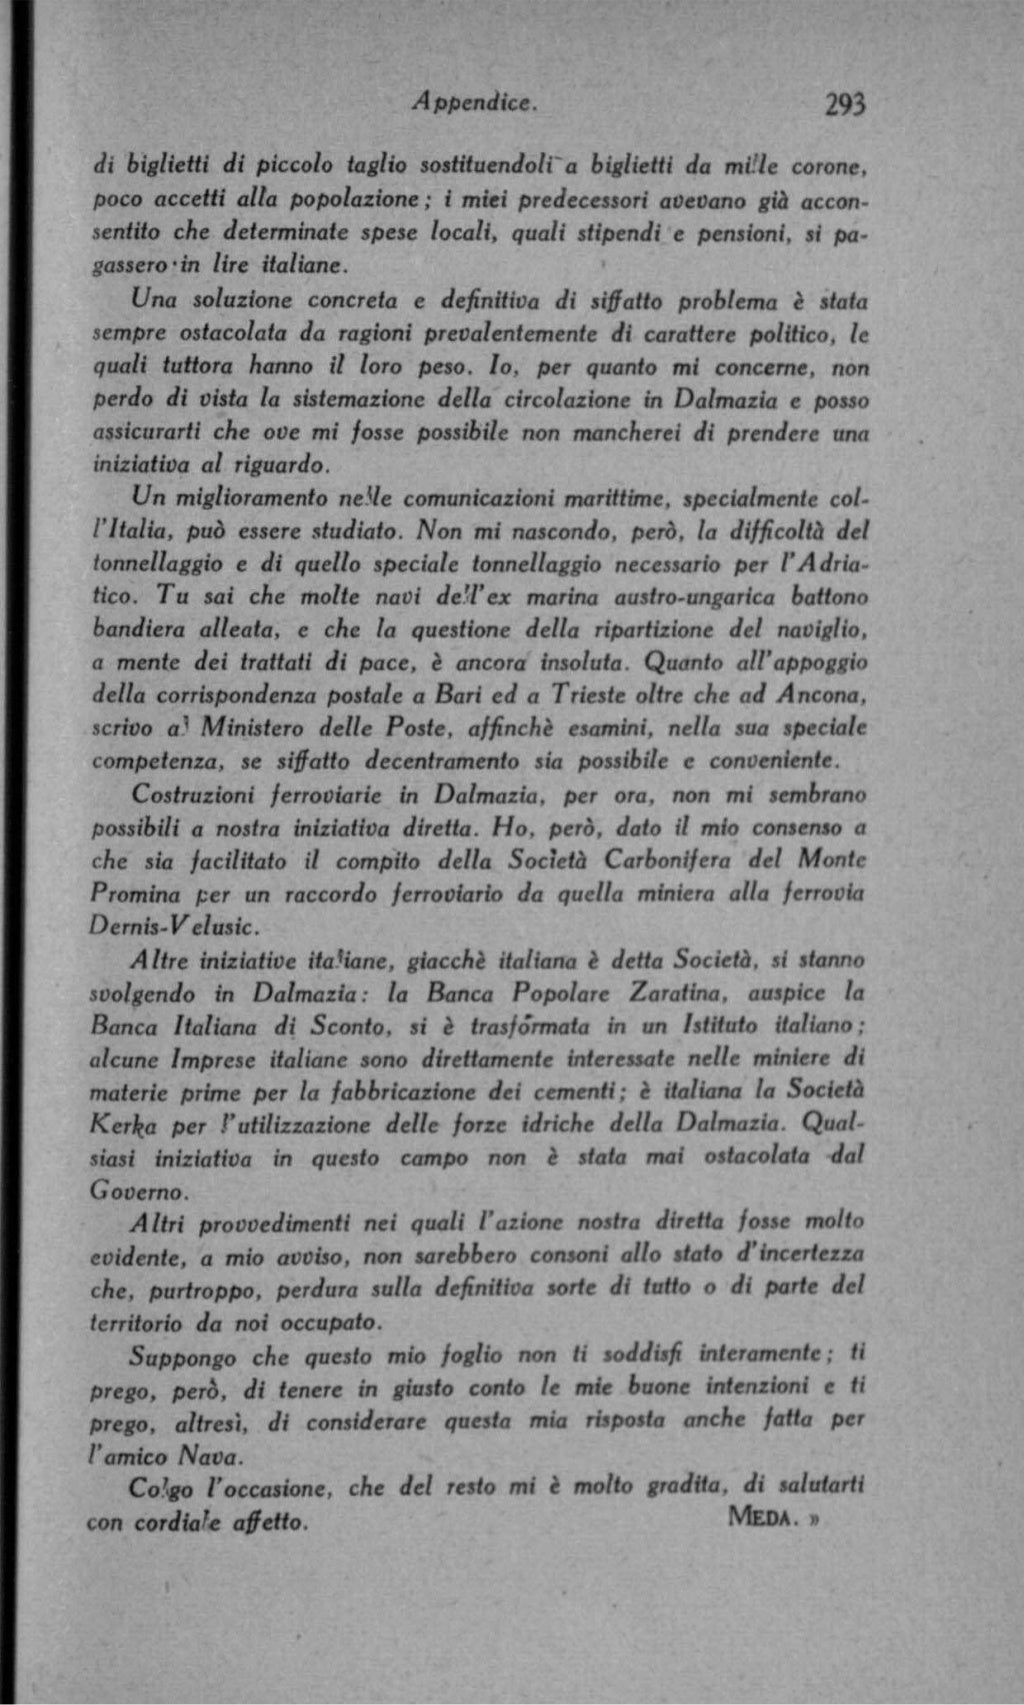 Luigi Federzoni - Il Trattato di Rapallo (1921)